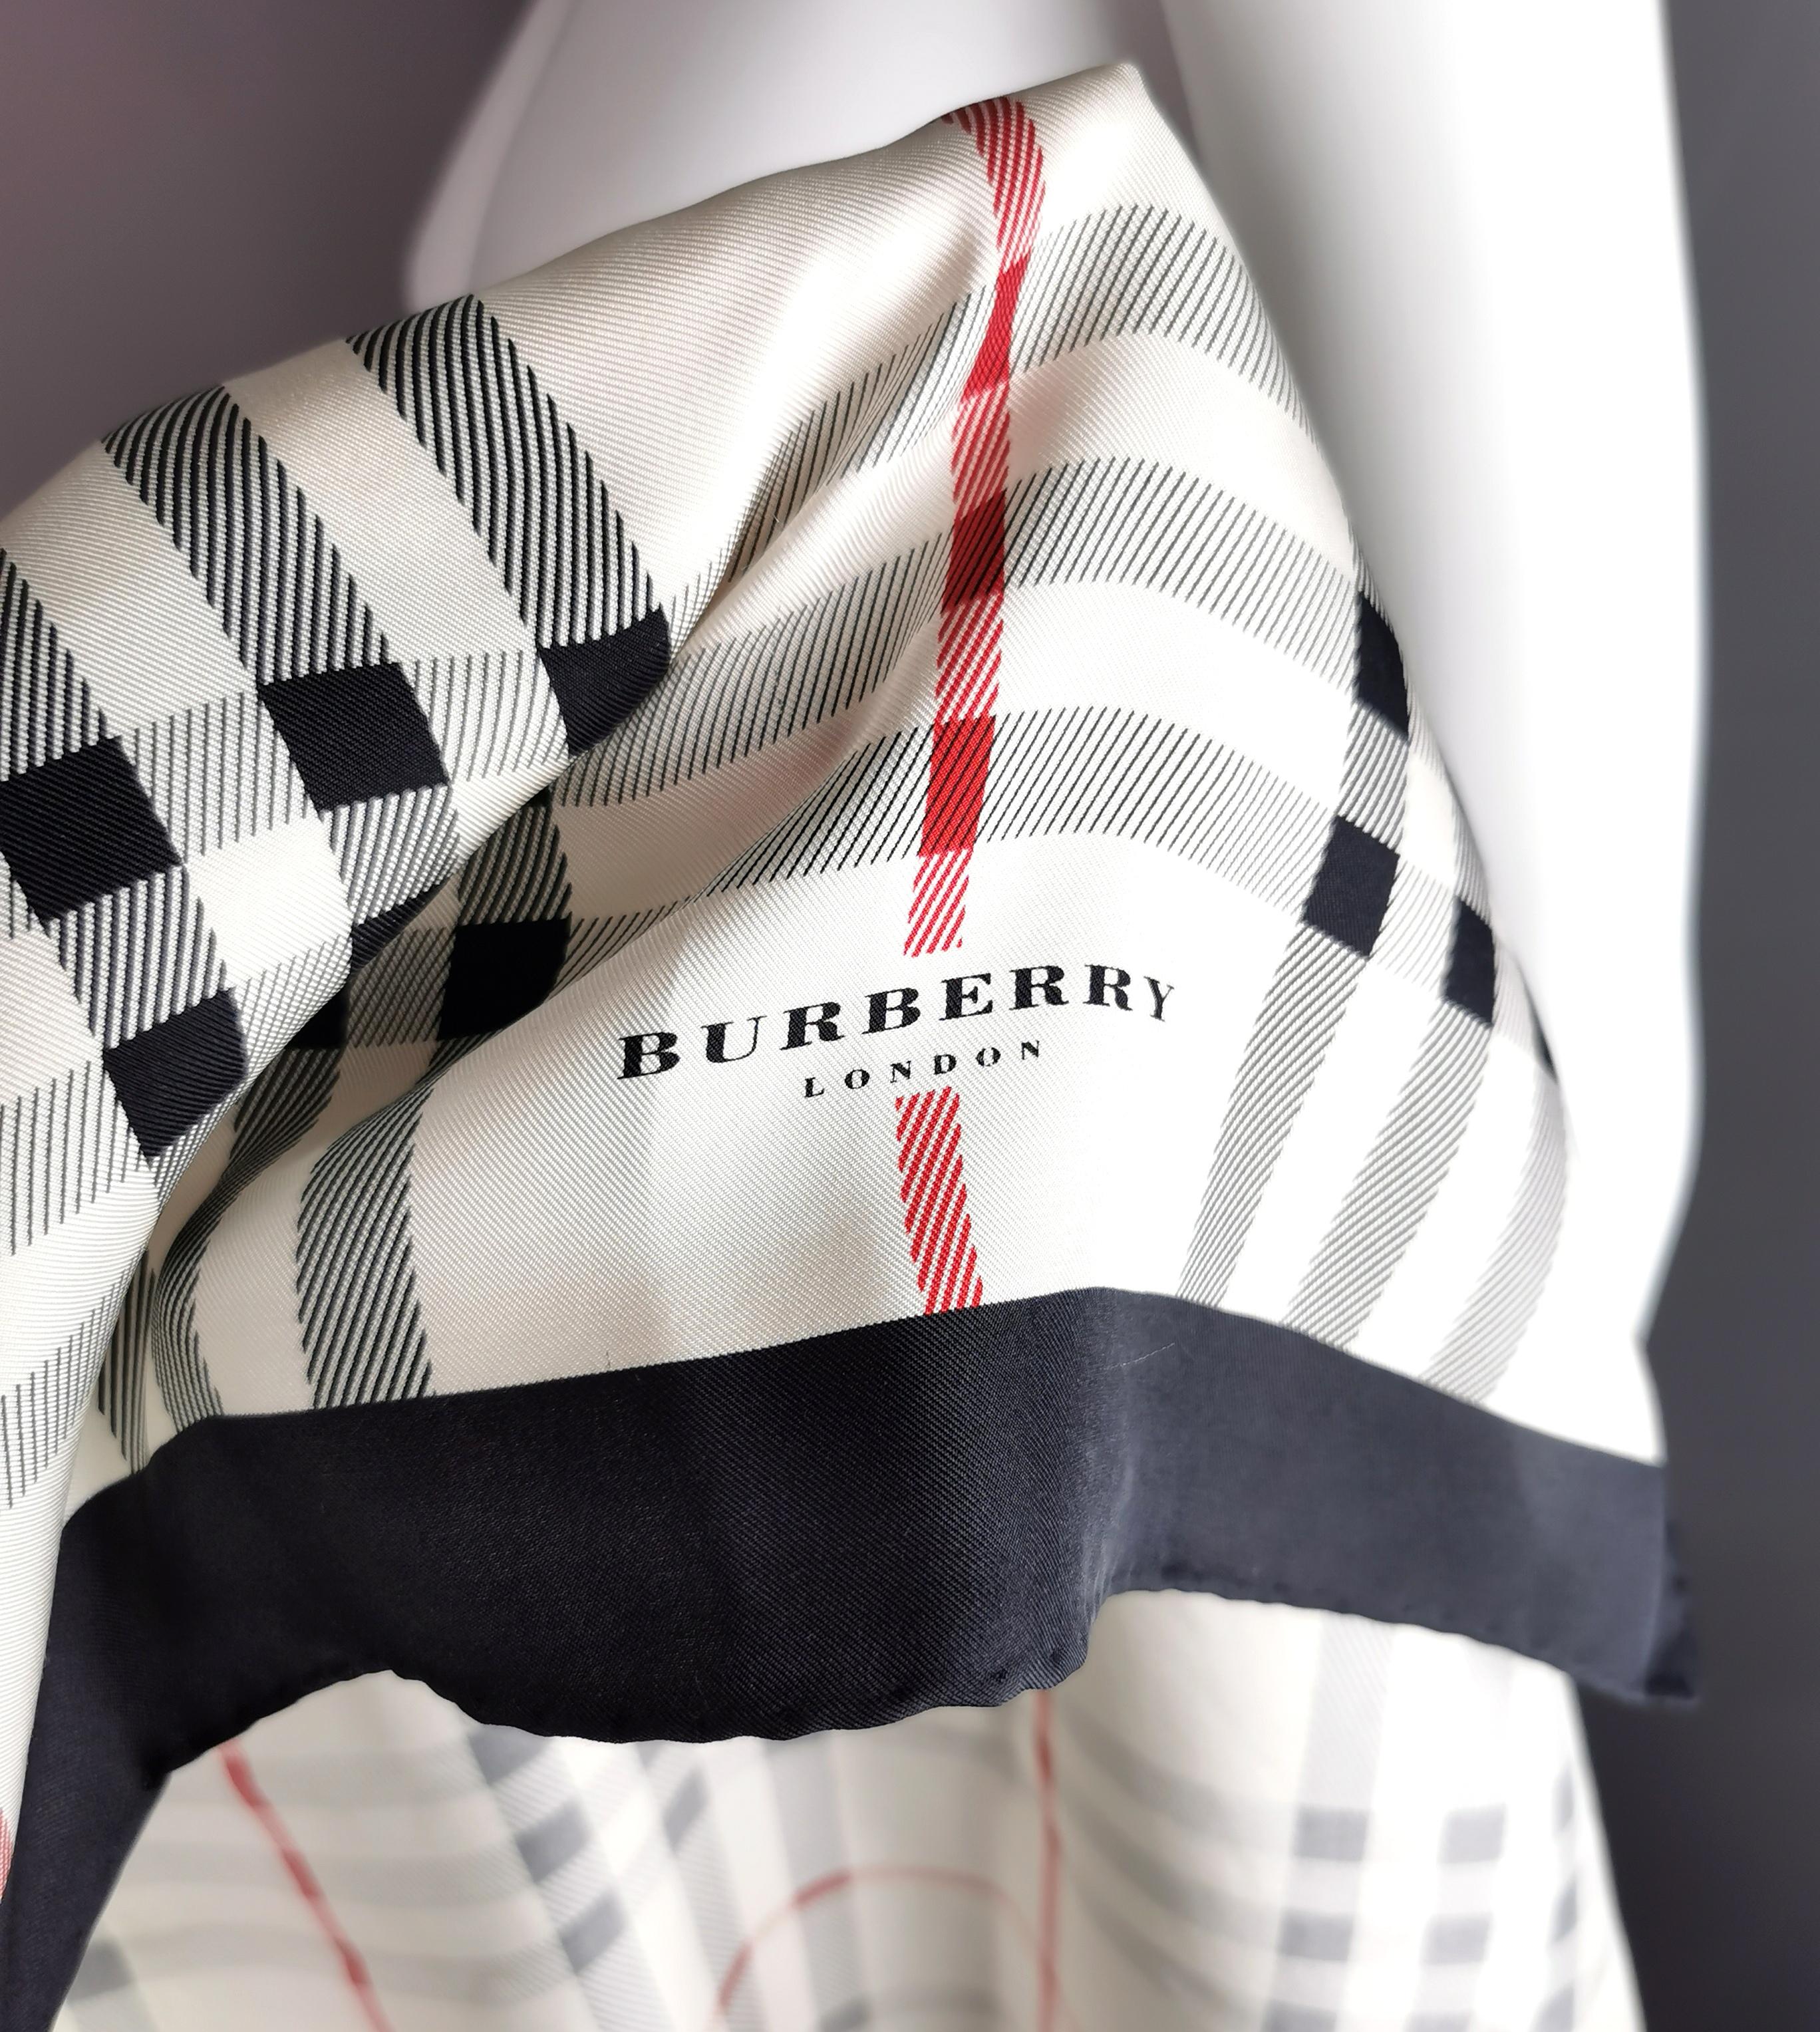 Un élégant foulard vintage en soie à carreaux de Burberry.

Il s'agit d'une grande écharpe de forme carrée légèrement décalée, de couleur blanc cassé, rouge et noir, avec un imprimé à carreaux caractéristique.

Marquage imprimé au coin de l'écharpe